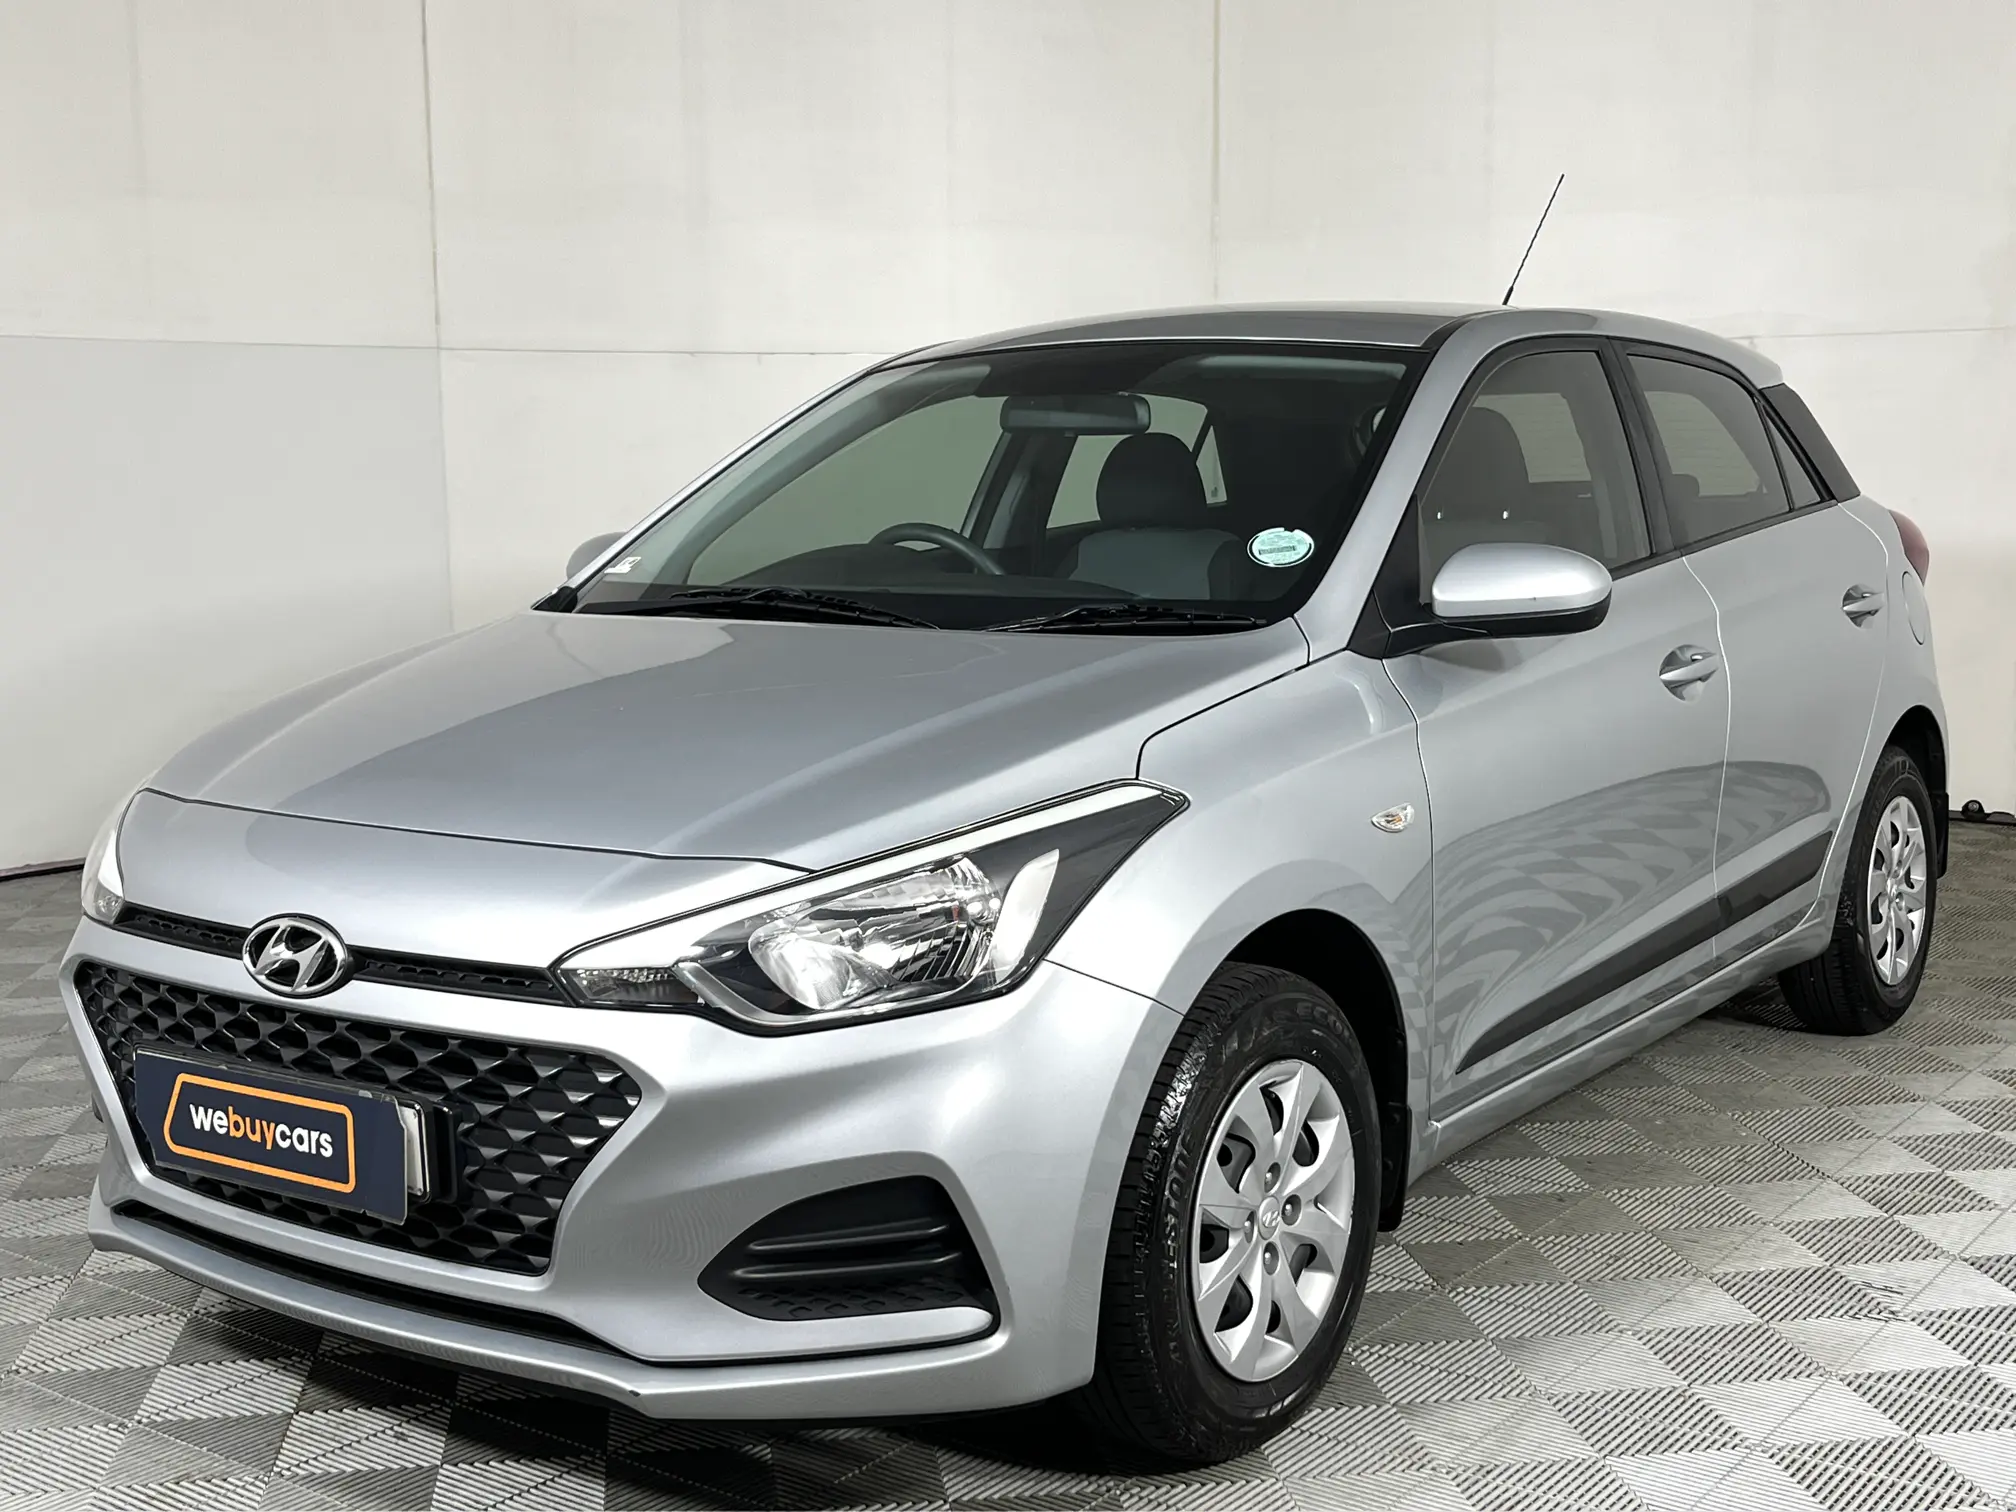 2019 Hyundai i20 1.2 Motion